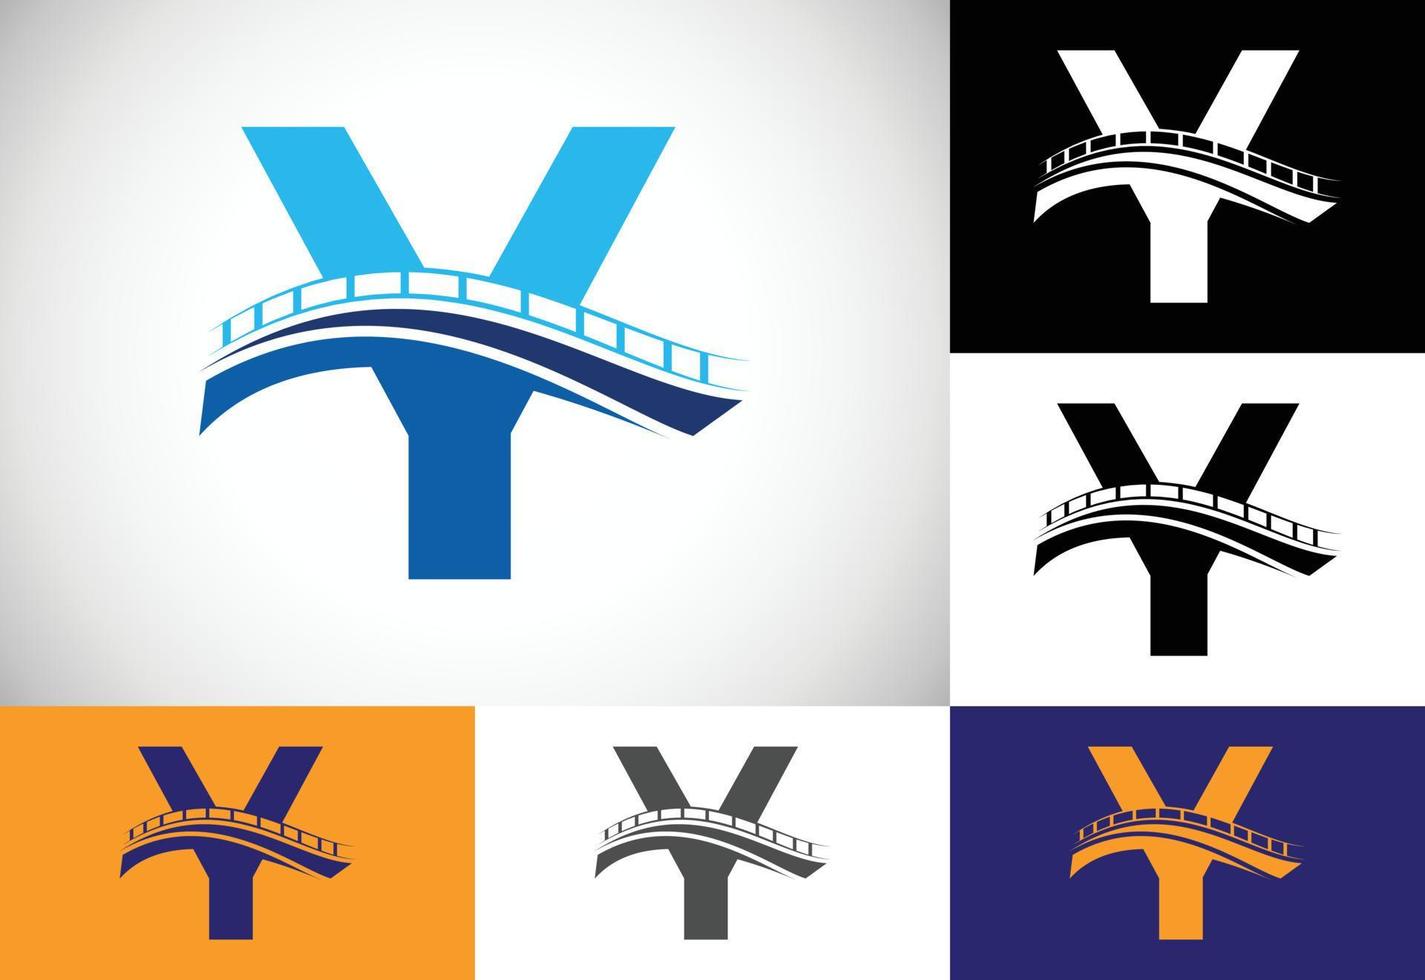 alfabeto de letra do monograma inicial y com sinal de ponte. modelo de design de logotipo de ponte abstrata. logotipo de vetor moderno para negócios de construção e identidade da empresa.